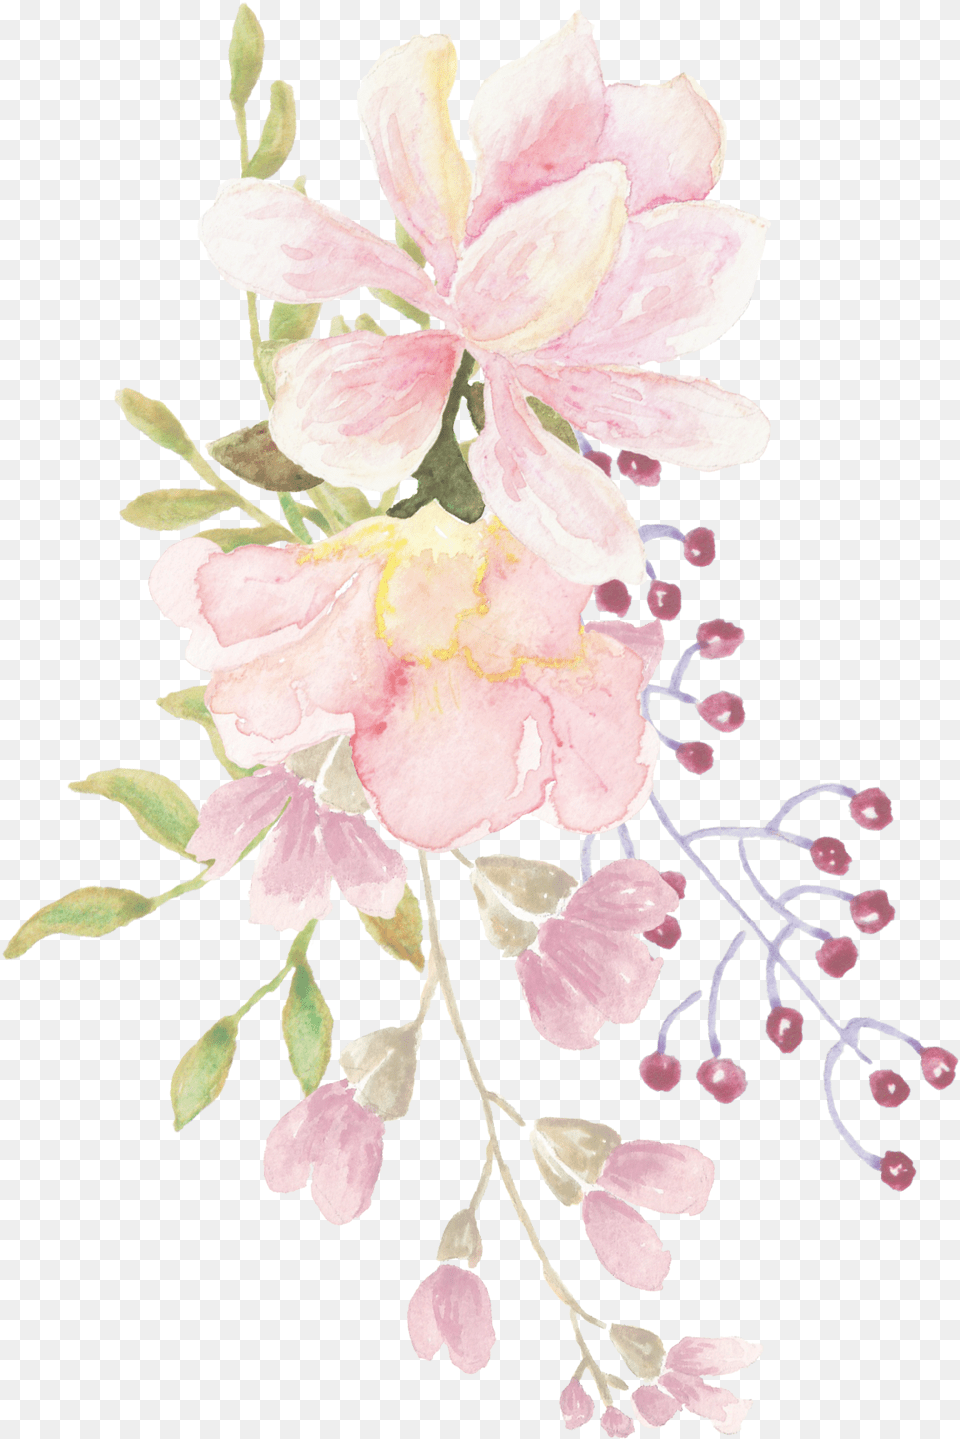 Clip Art Flowers J Art, Plant, Petal, Pattern, Graphics Free Transparent Png